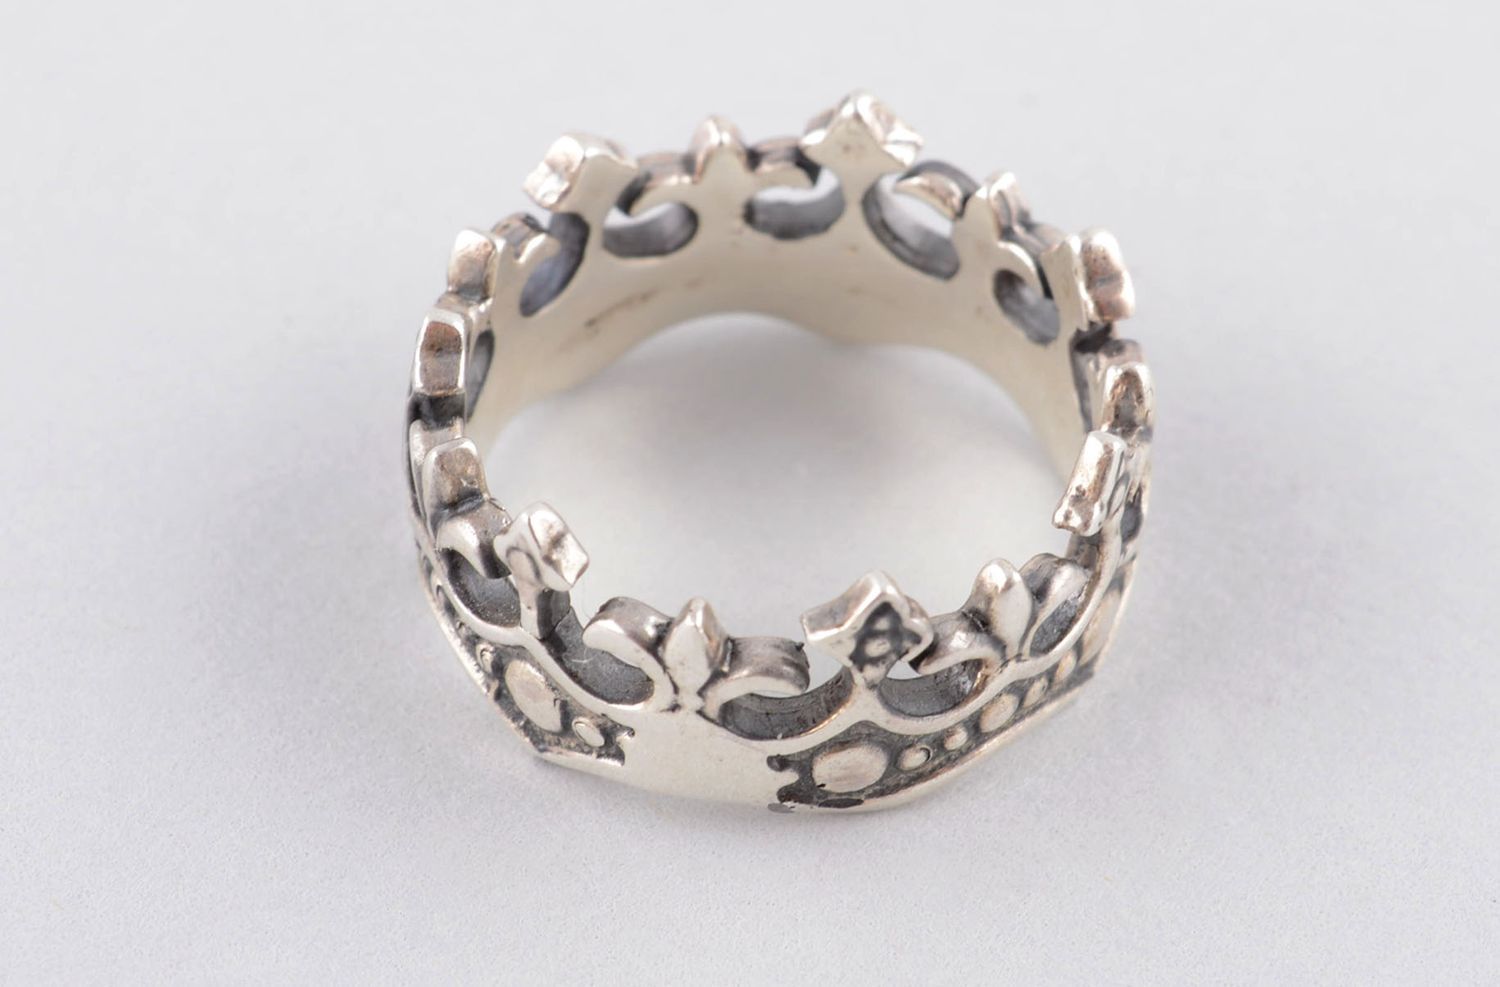 Handmade bronze jewelry bronze ring for women crown ring handmade jewelry photo 1